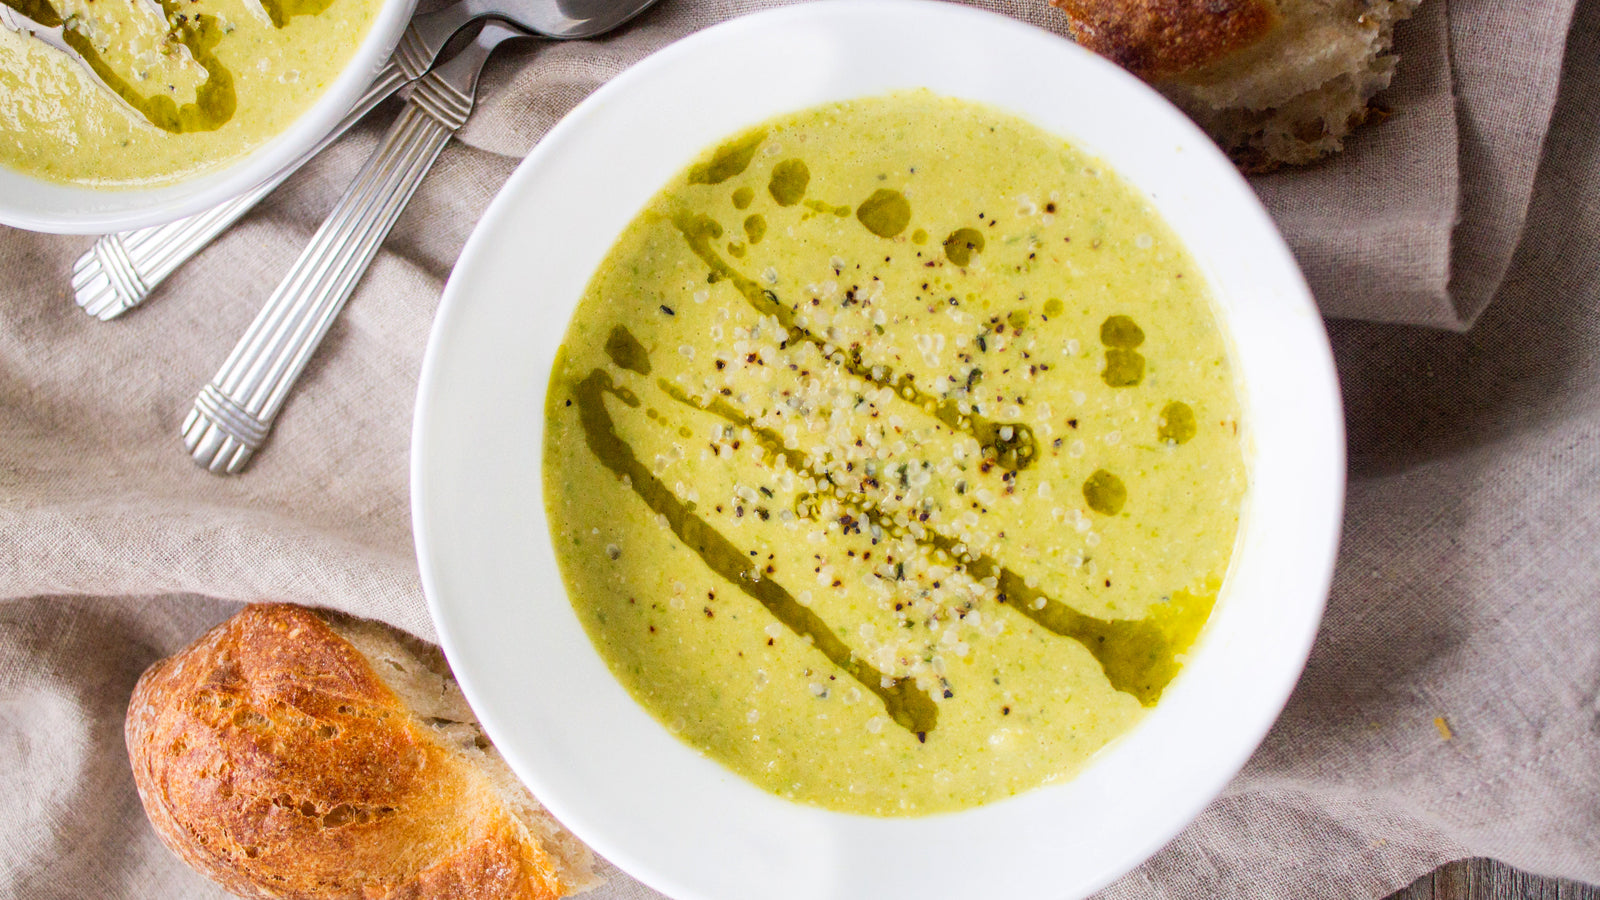 Vegan Asparagus Leek and Hemp Soup